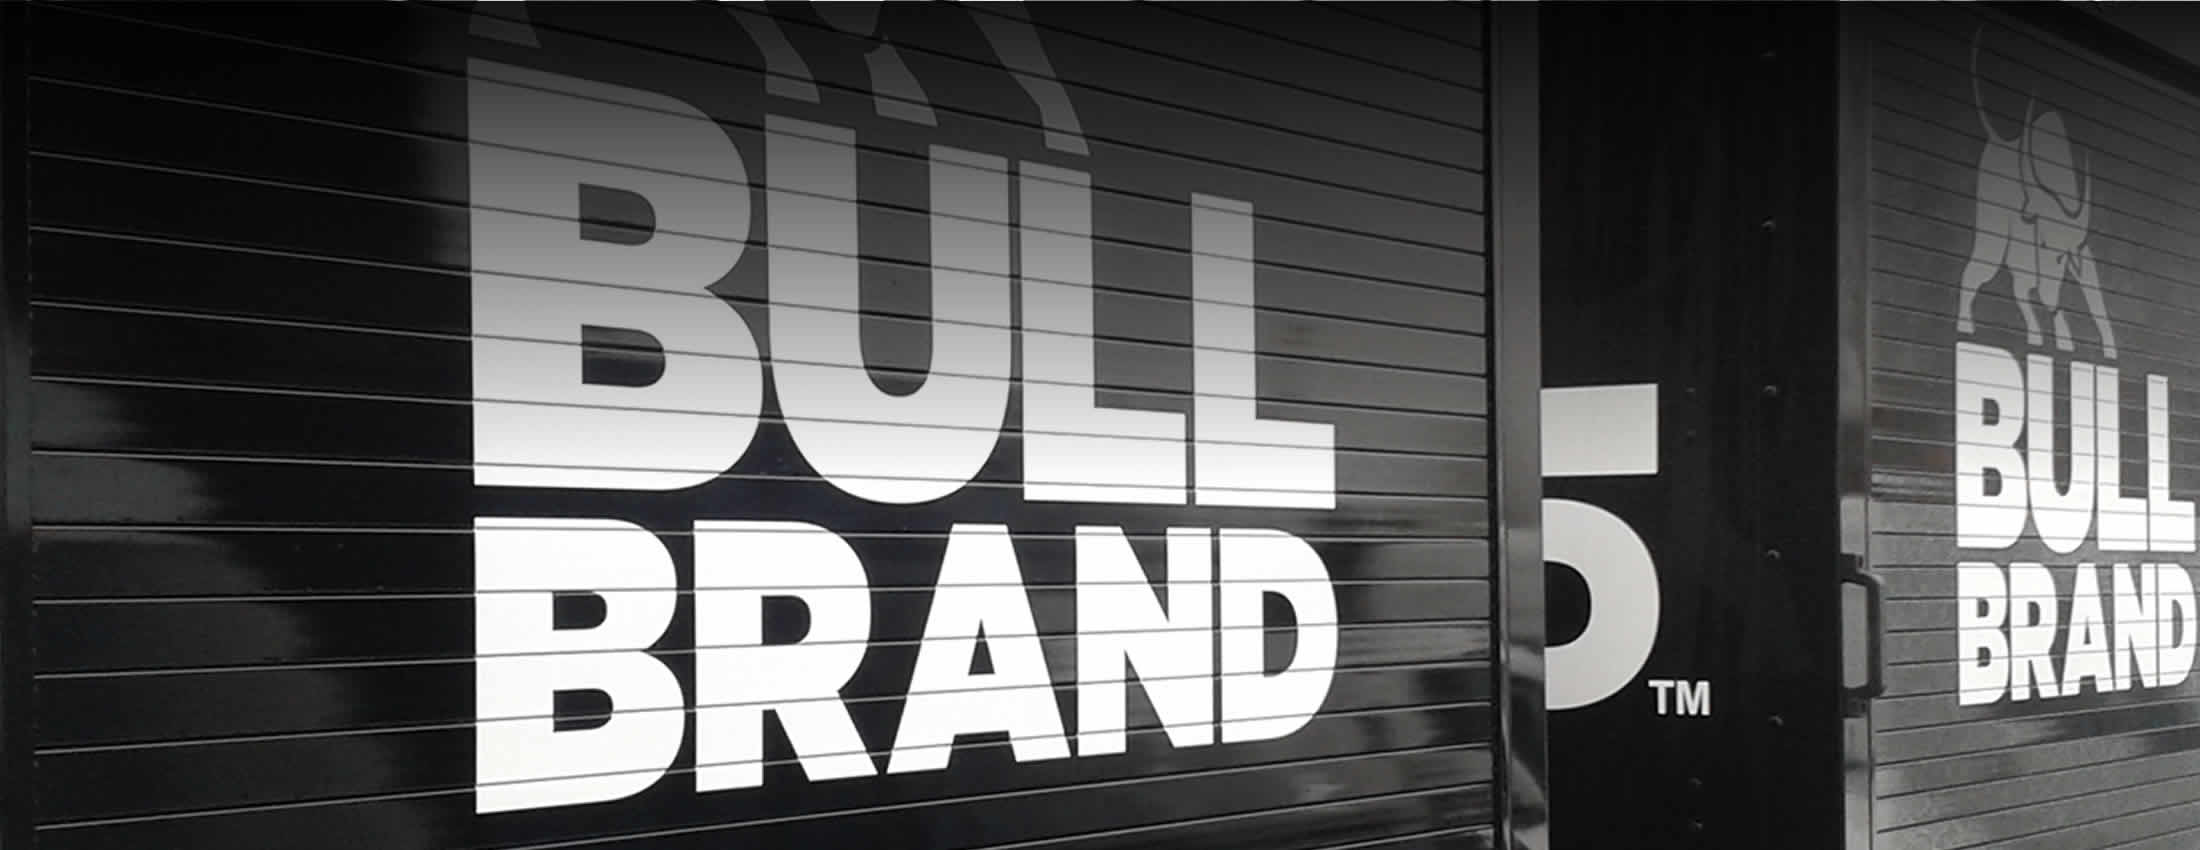 Bull Brand